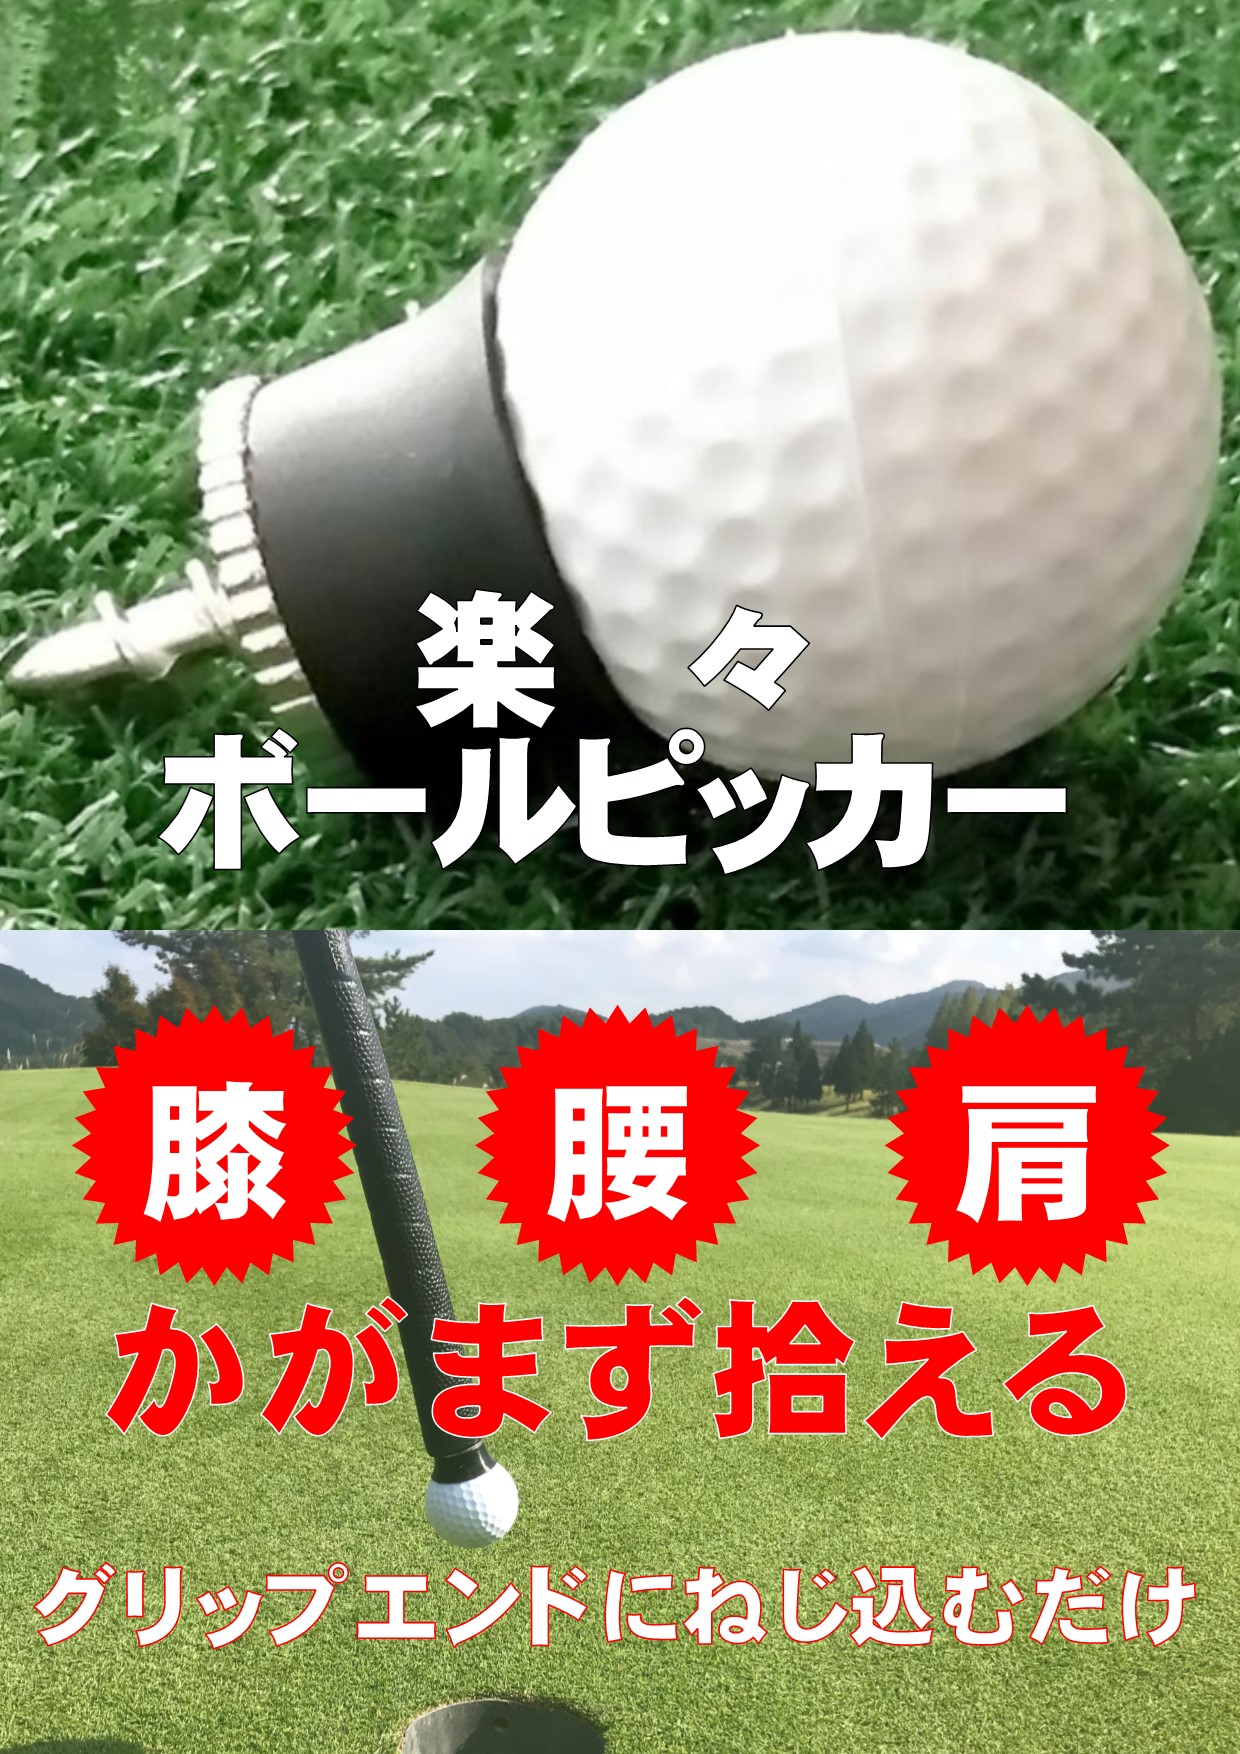 楽天市場 送料無料 ゴルフ ボールピッカー パター グリップ用 吸盤 E 特鮮便